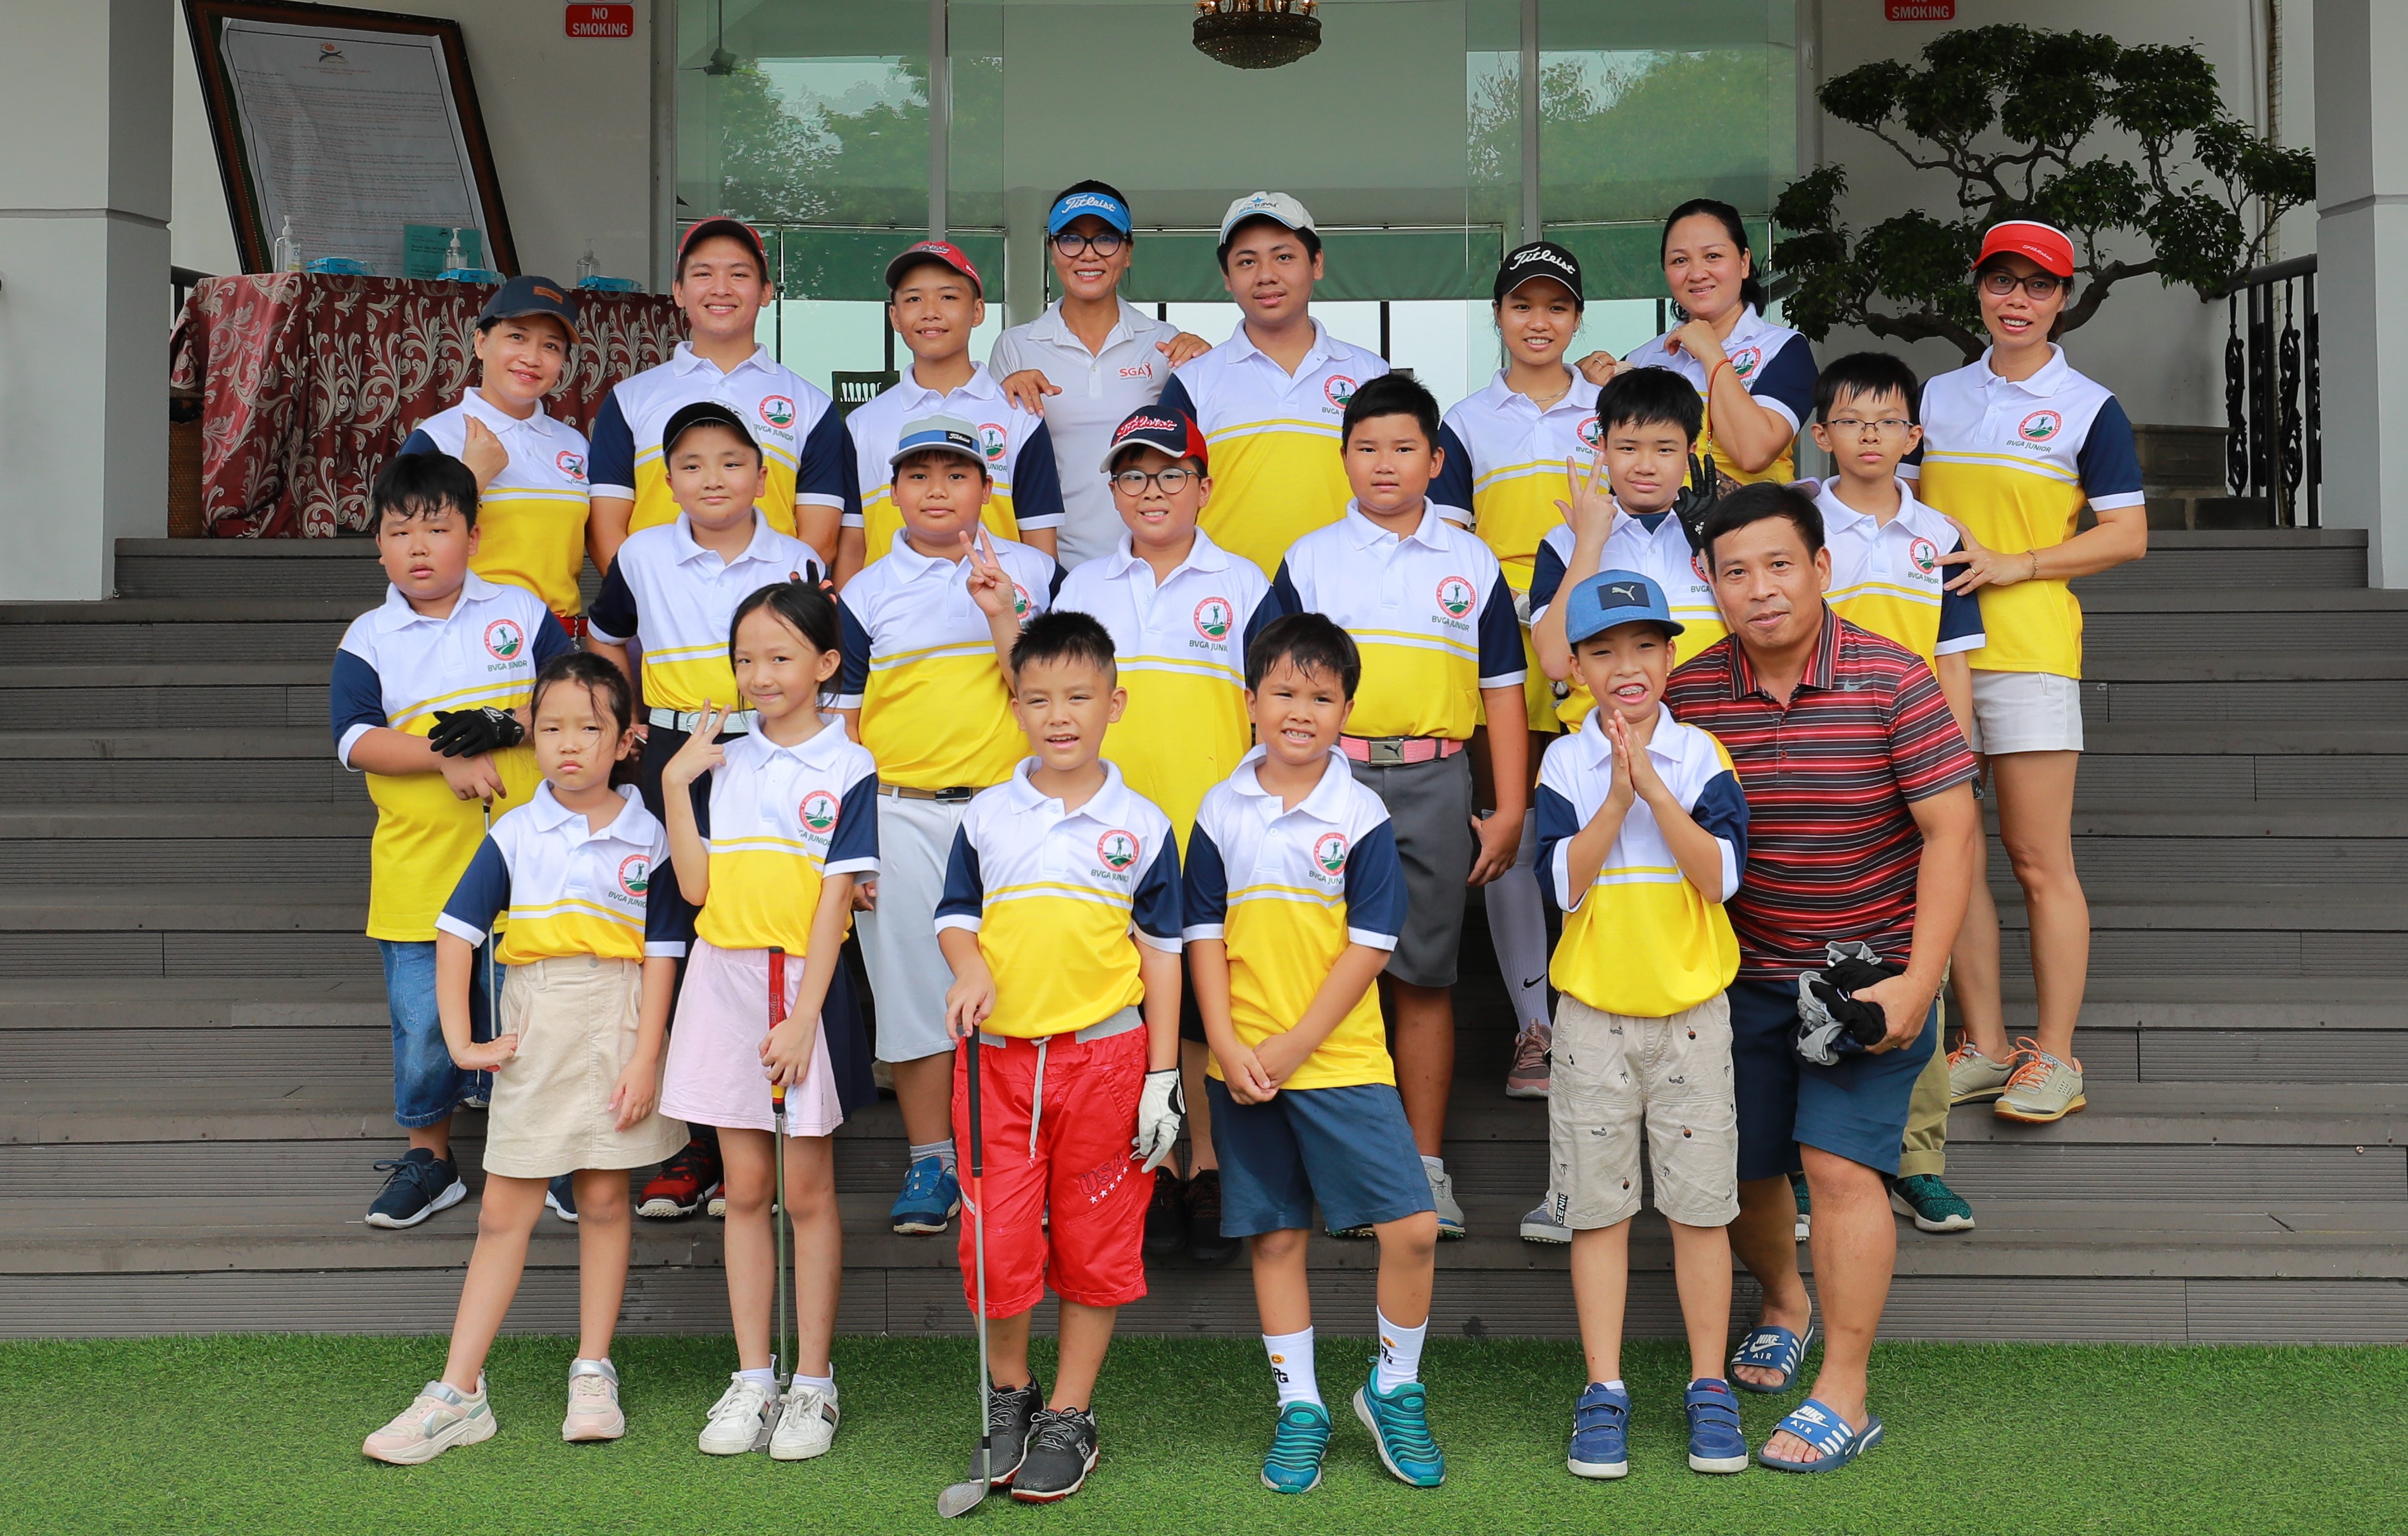 Hội golf Bà Rịa - Vũng Tàu đi đầu trong lĩnh vực đào tạo golf trẻ